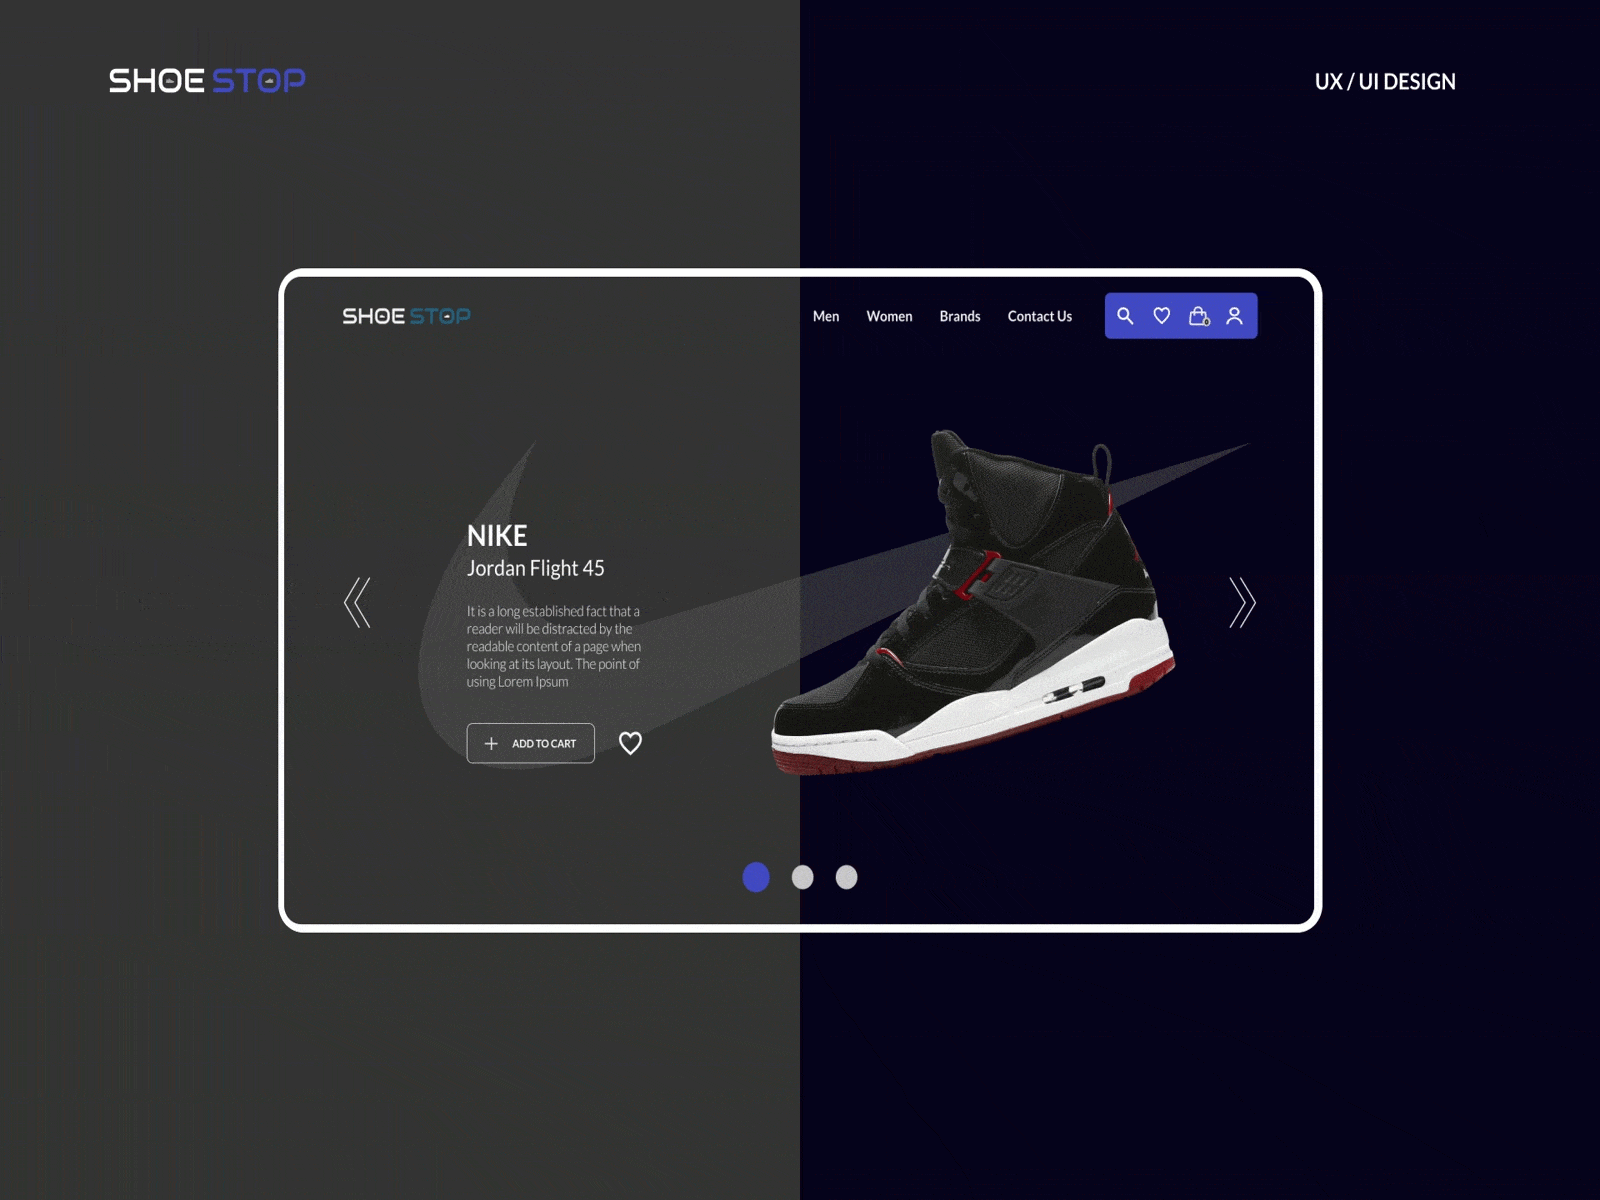 Shoe Stop ecommerce interaction design shoe ui ux design uiux ux design web design